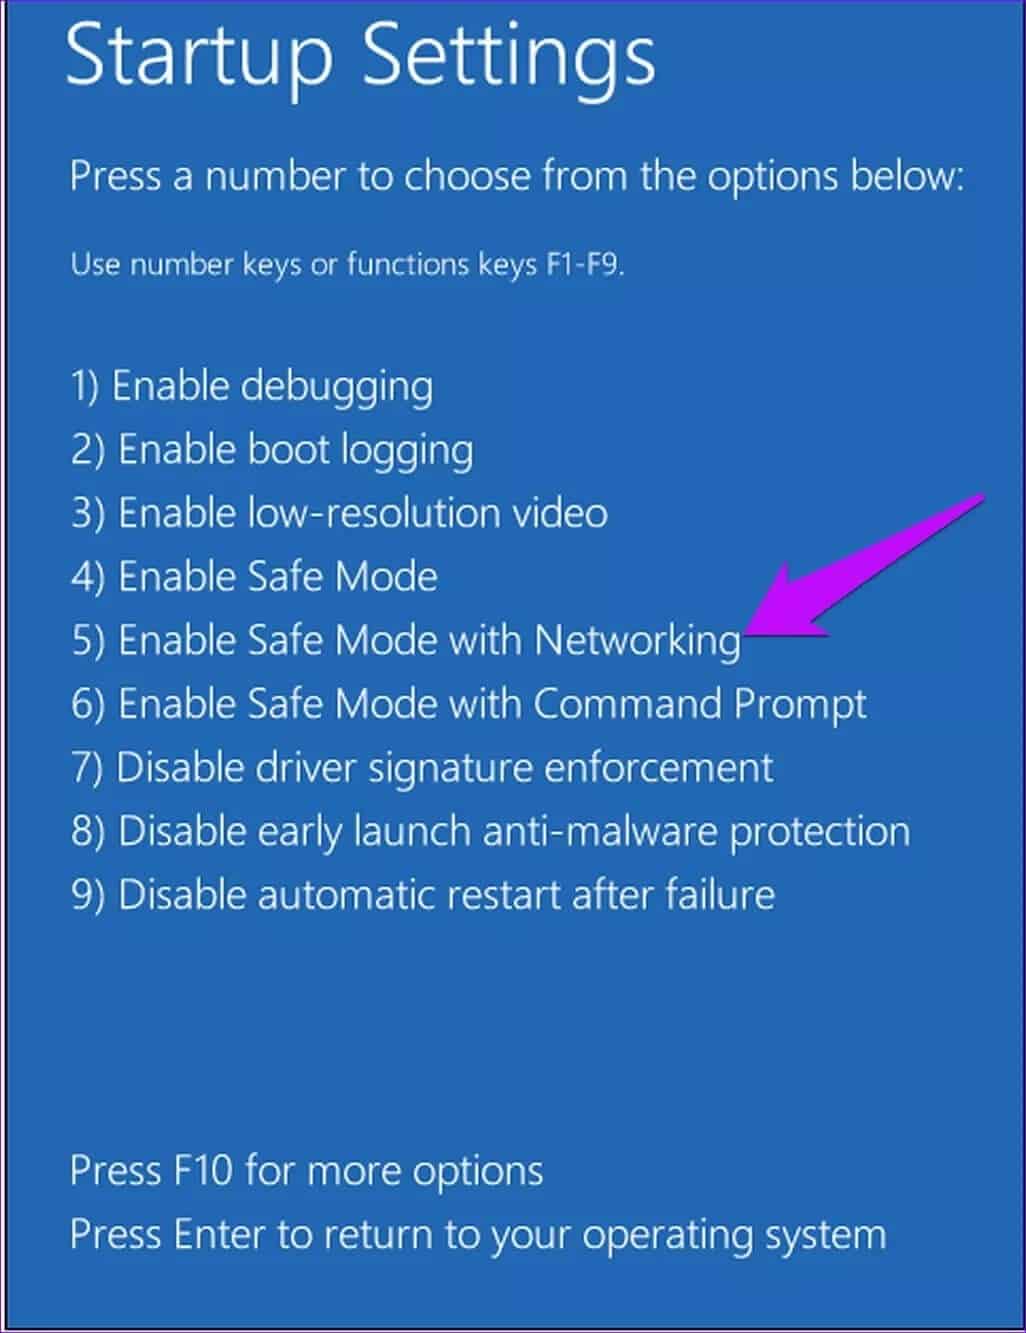 أفضل 5 طرق لإصلاح عدم عمل مستكشف الأخطاء ومصلحها Windows 10 - %categories